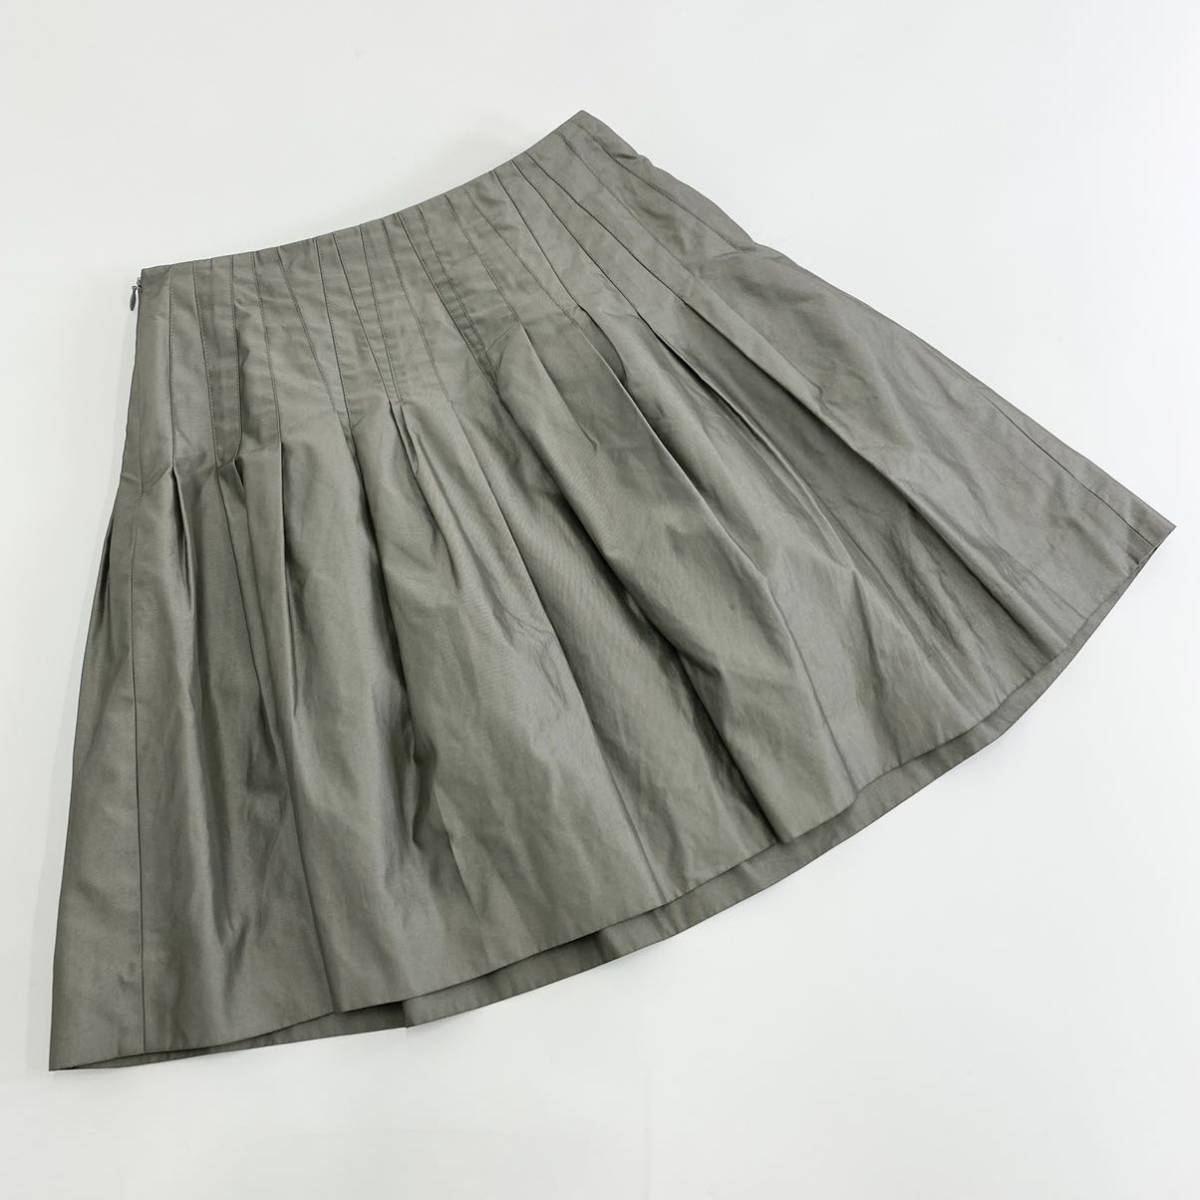 Ad17 ANTEPRIMA Anteprima flair юбка юбка в сборку колени длина 38 M размер соответствует глянец серый полиэстер 100% женский женский 